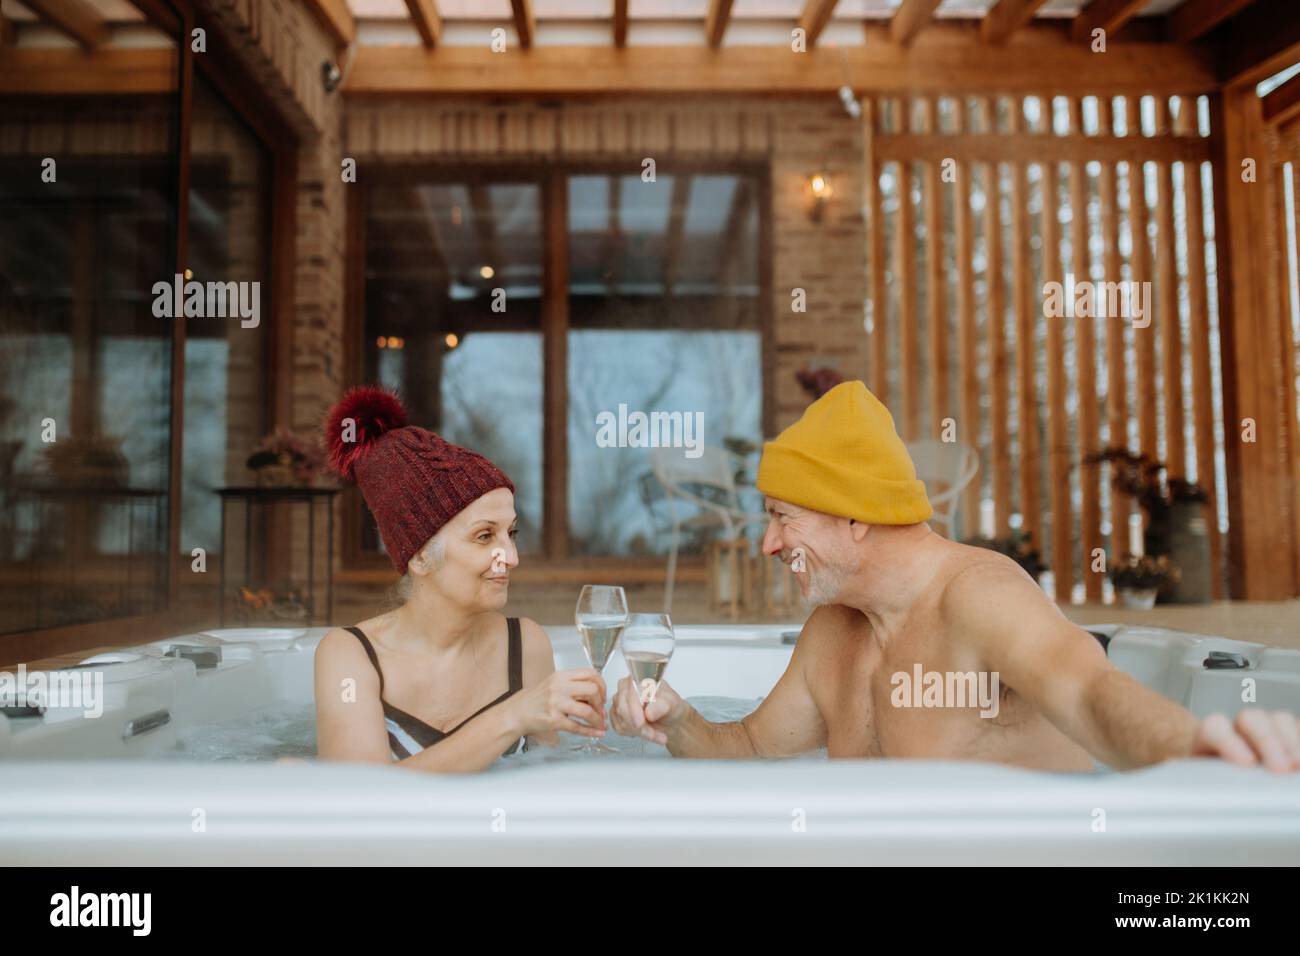 Ein Seniorenpaar mit geknickter Kappe genießt an kalten Wintertagen gemeinsam eine Badewanne im Freien und klirrende Gläser auf der Terrasse. Stockfoto